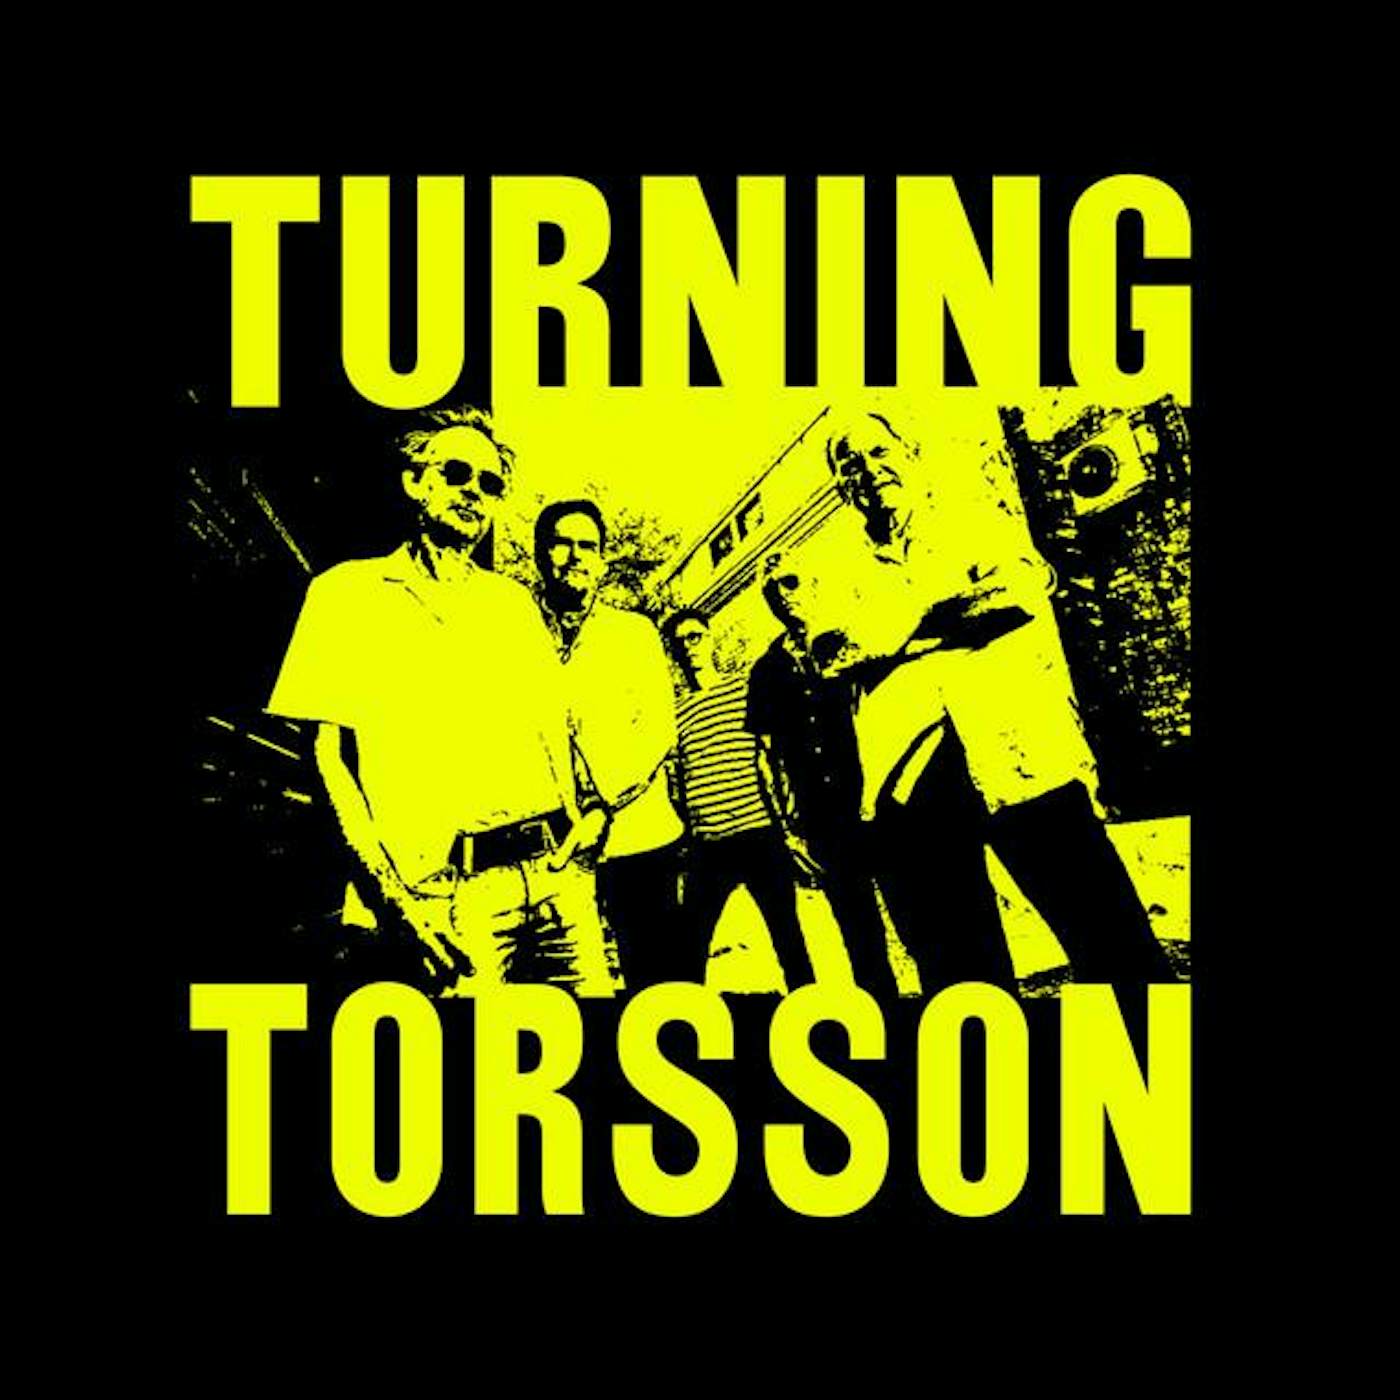 Torsson